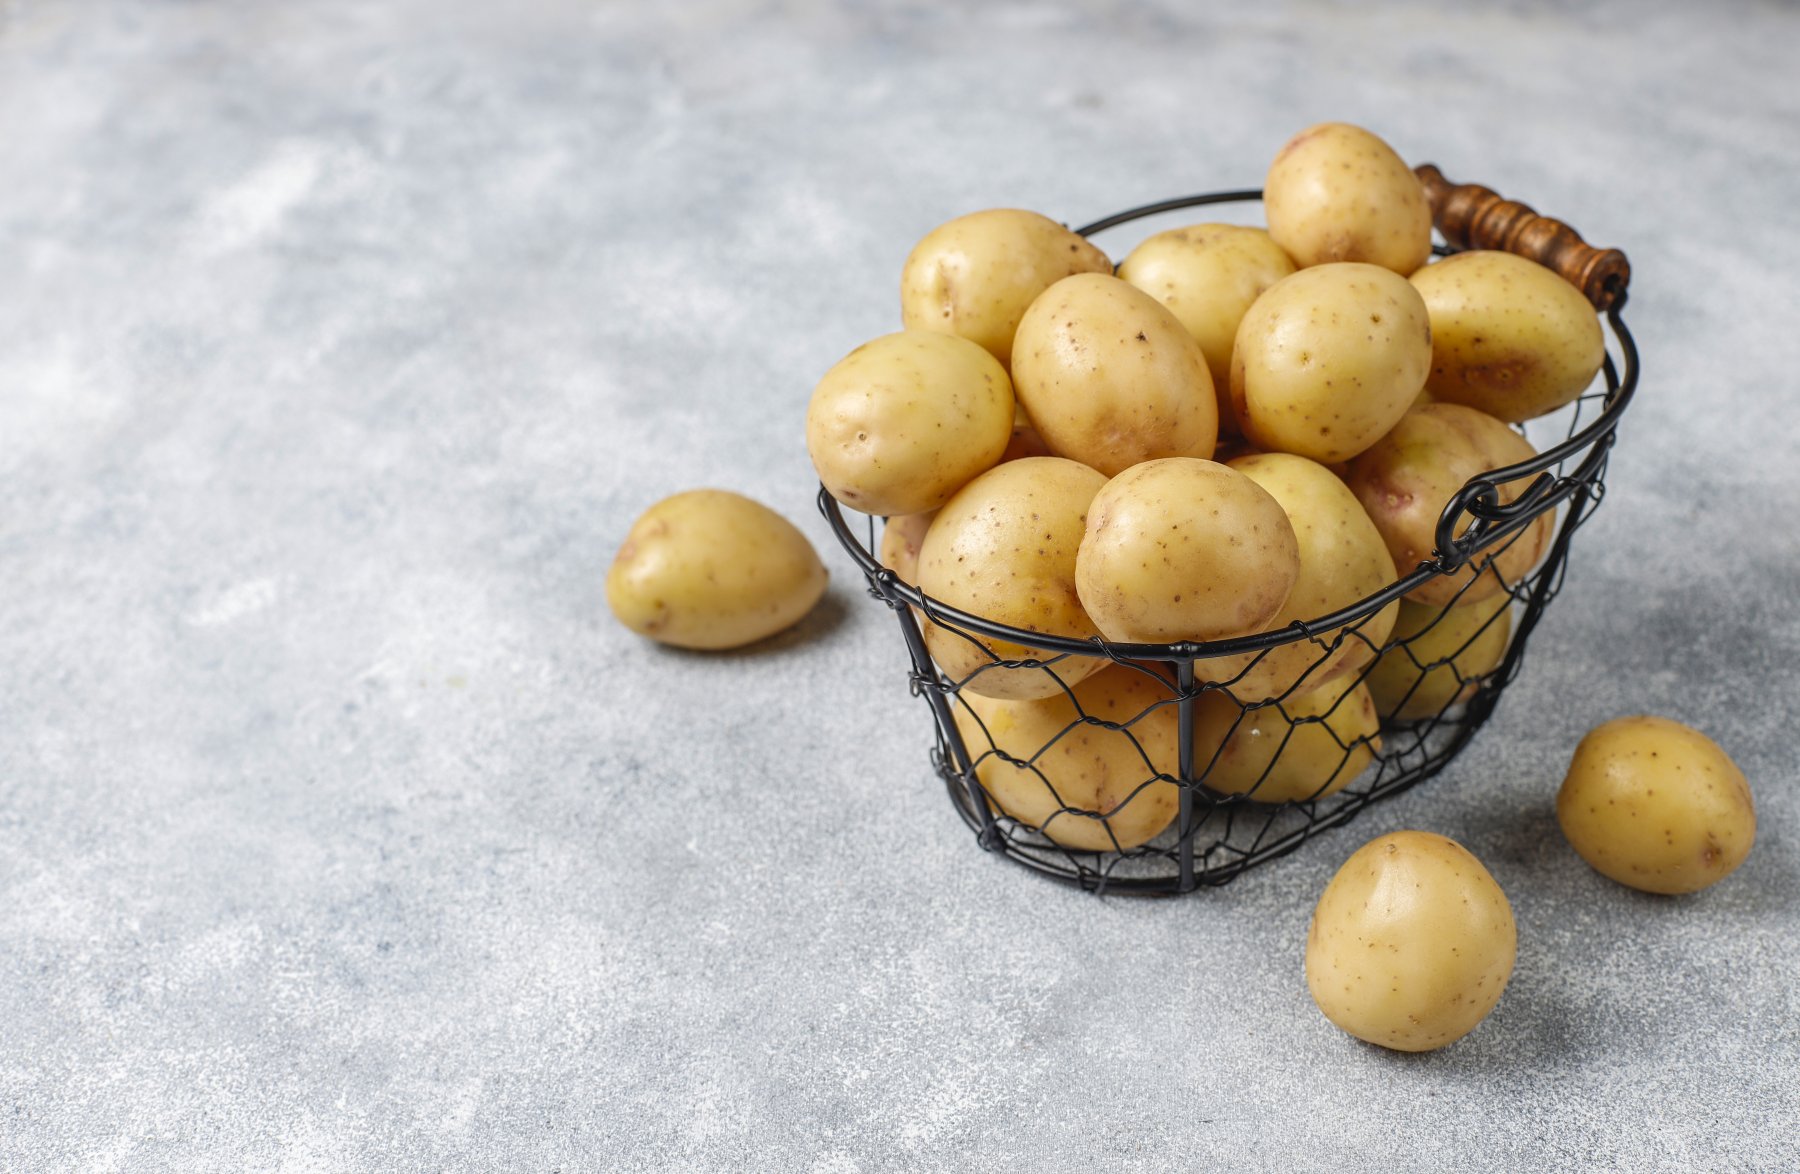 Домохозяйки Подмосковья рассказали о консервах из картошки на зиму